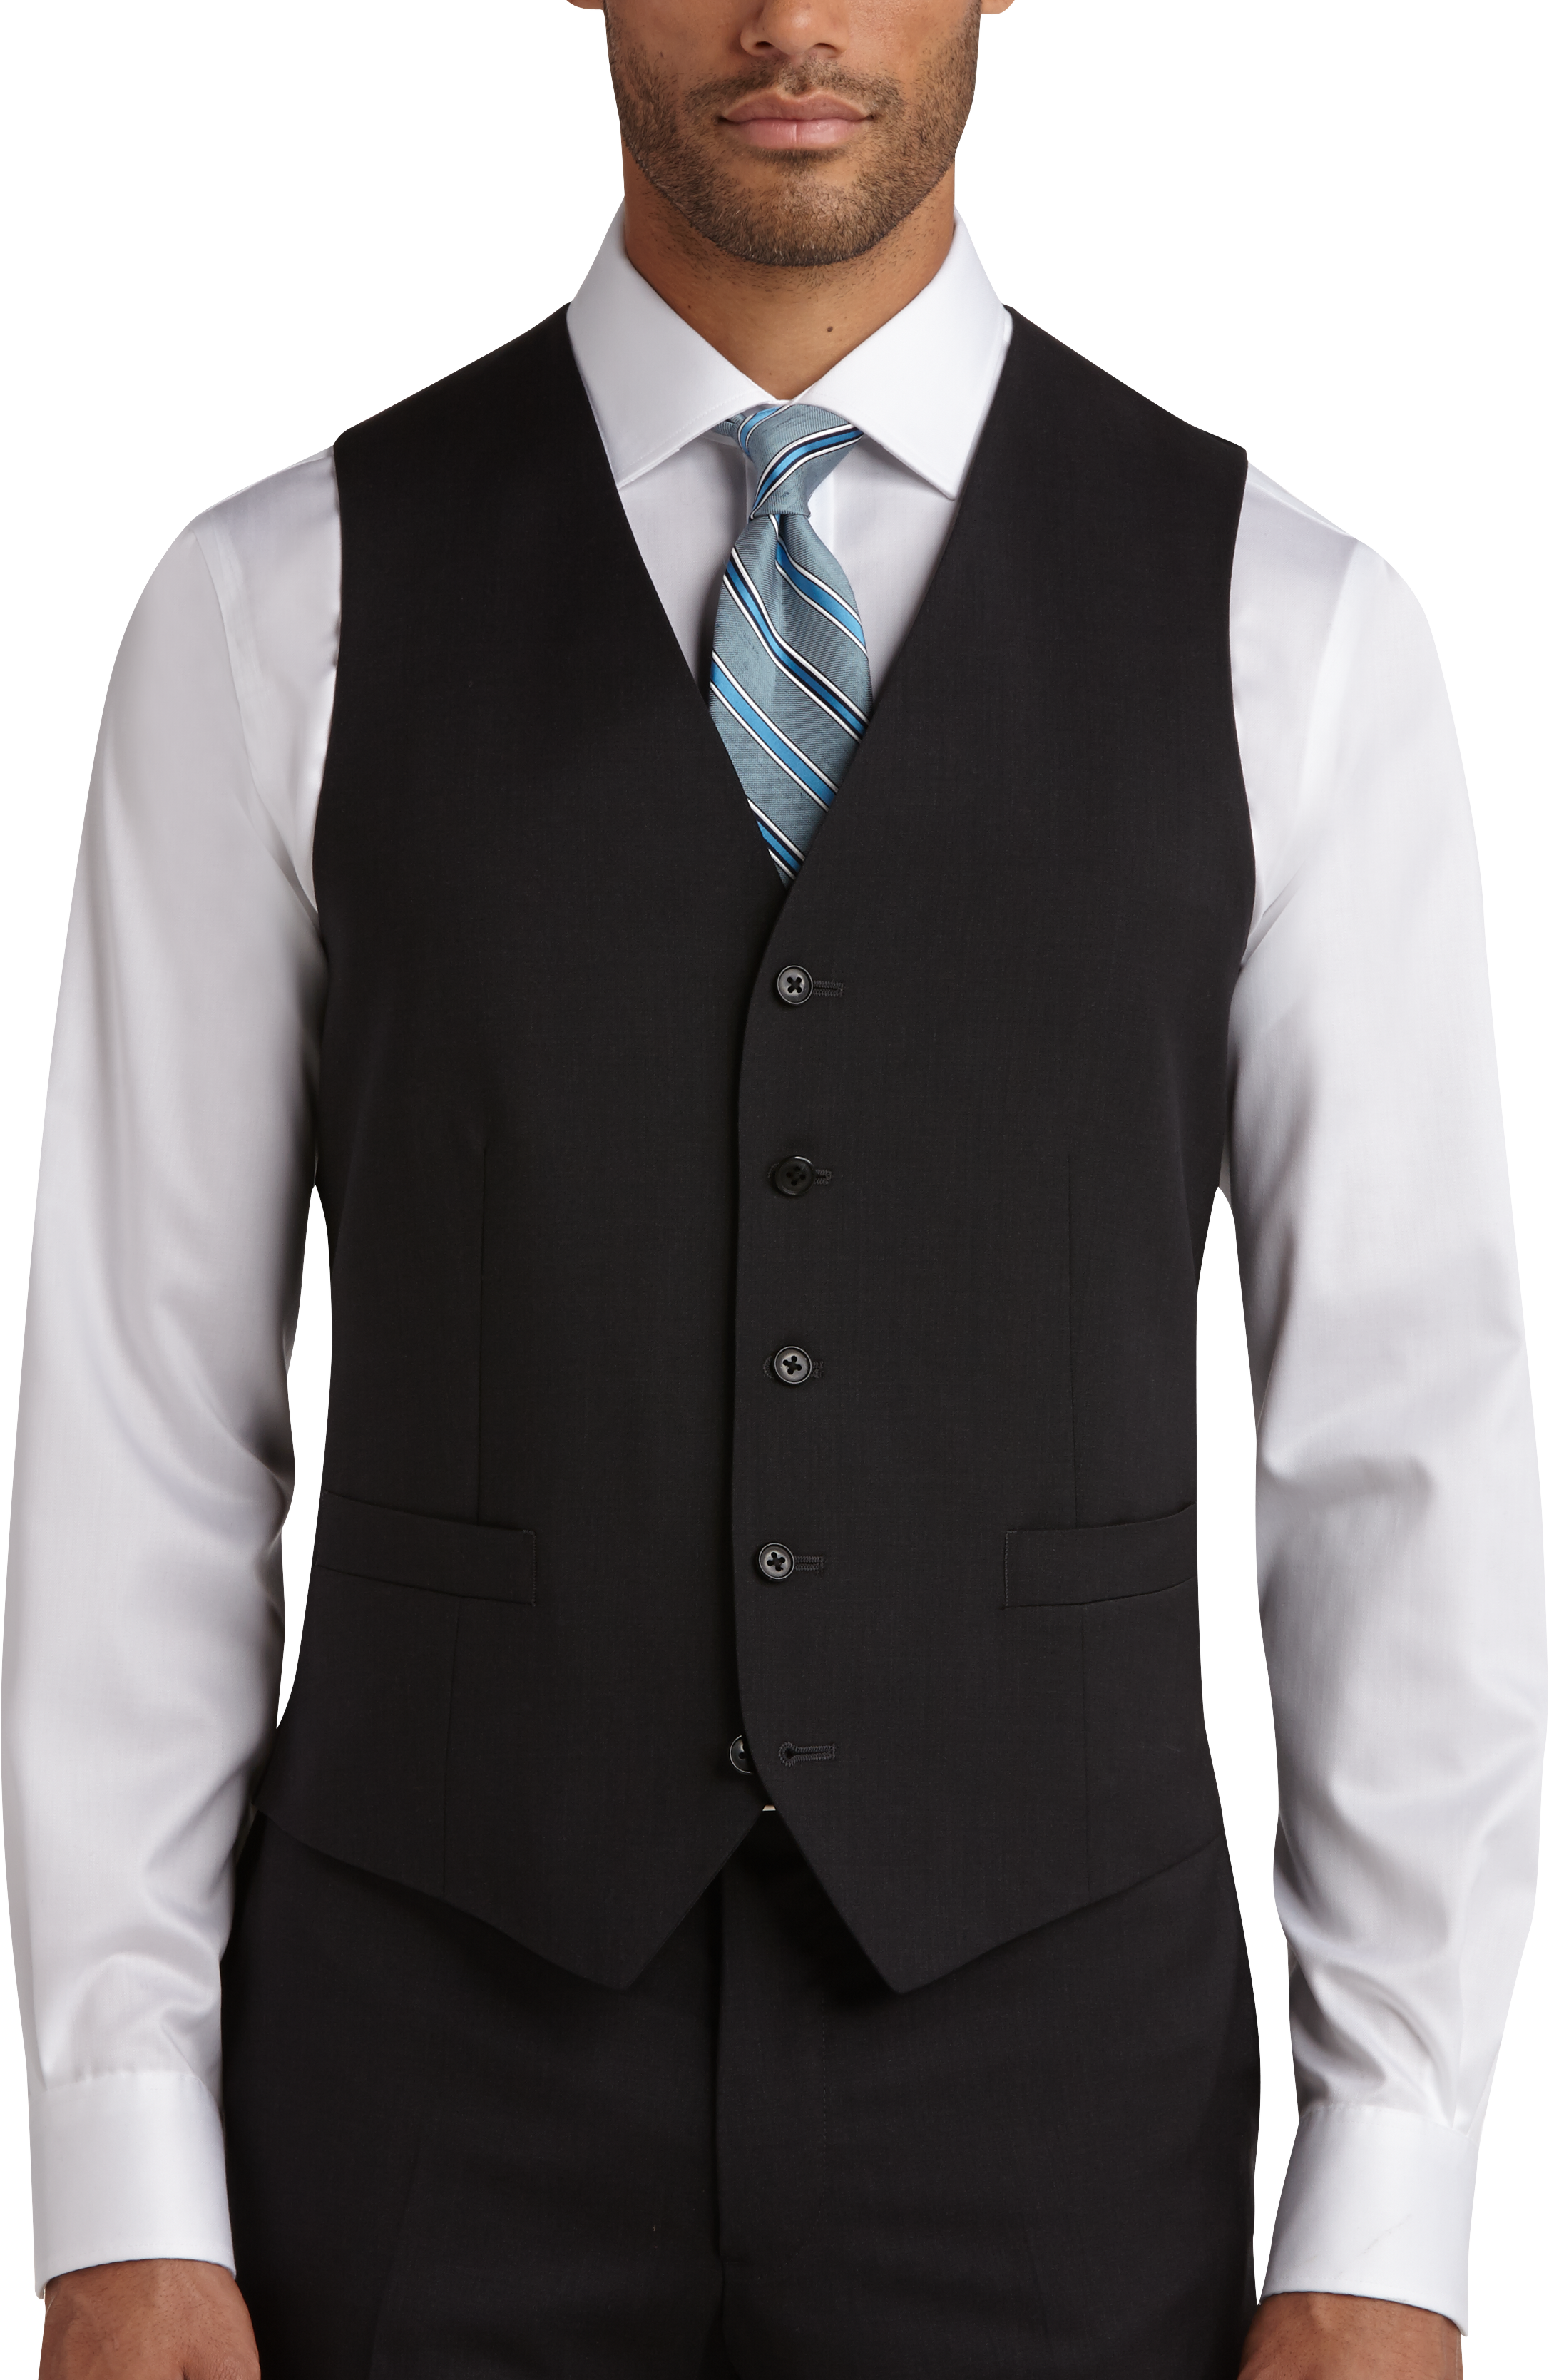 Joseph Abboud Charcoal Modern Fit Suit Separates Vest - Men's Suit ...